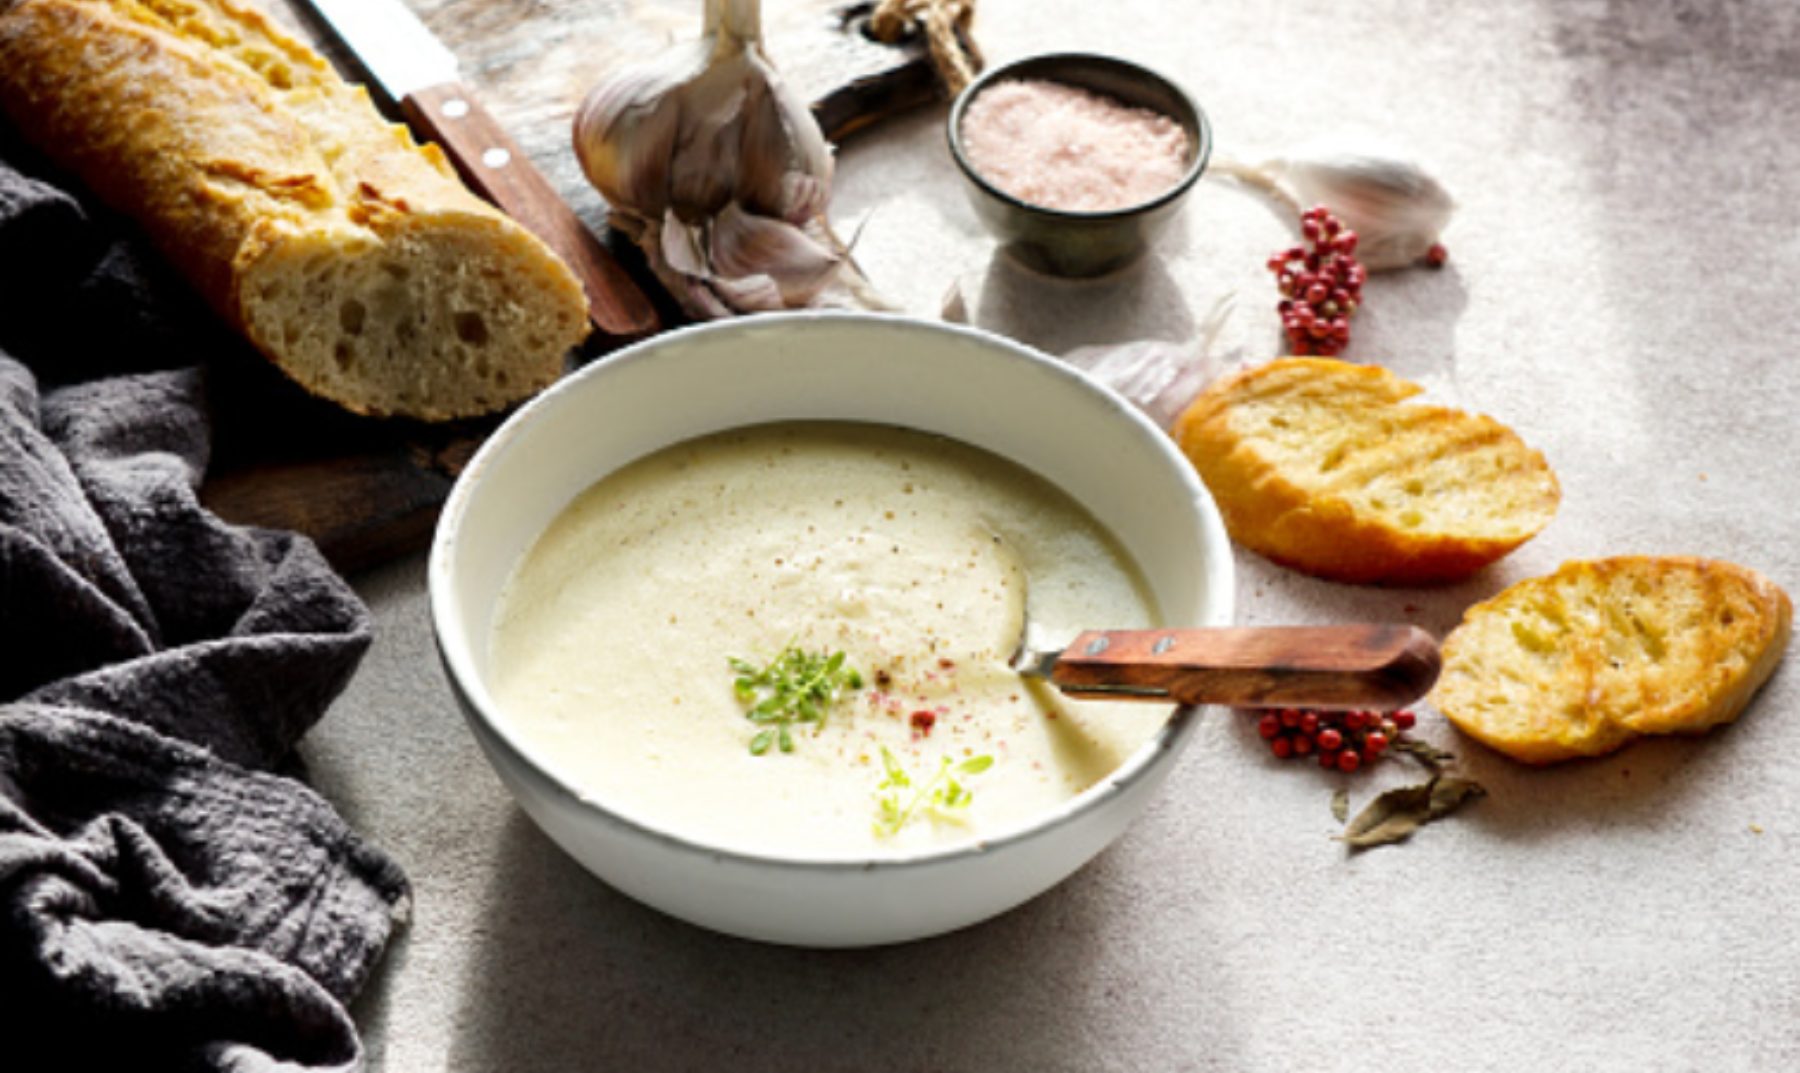 Sopa de ajo al microondas, receta de la abuela fácil de preparar en 5 minutos 4